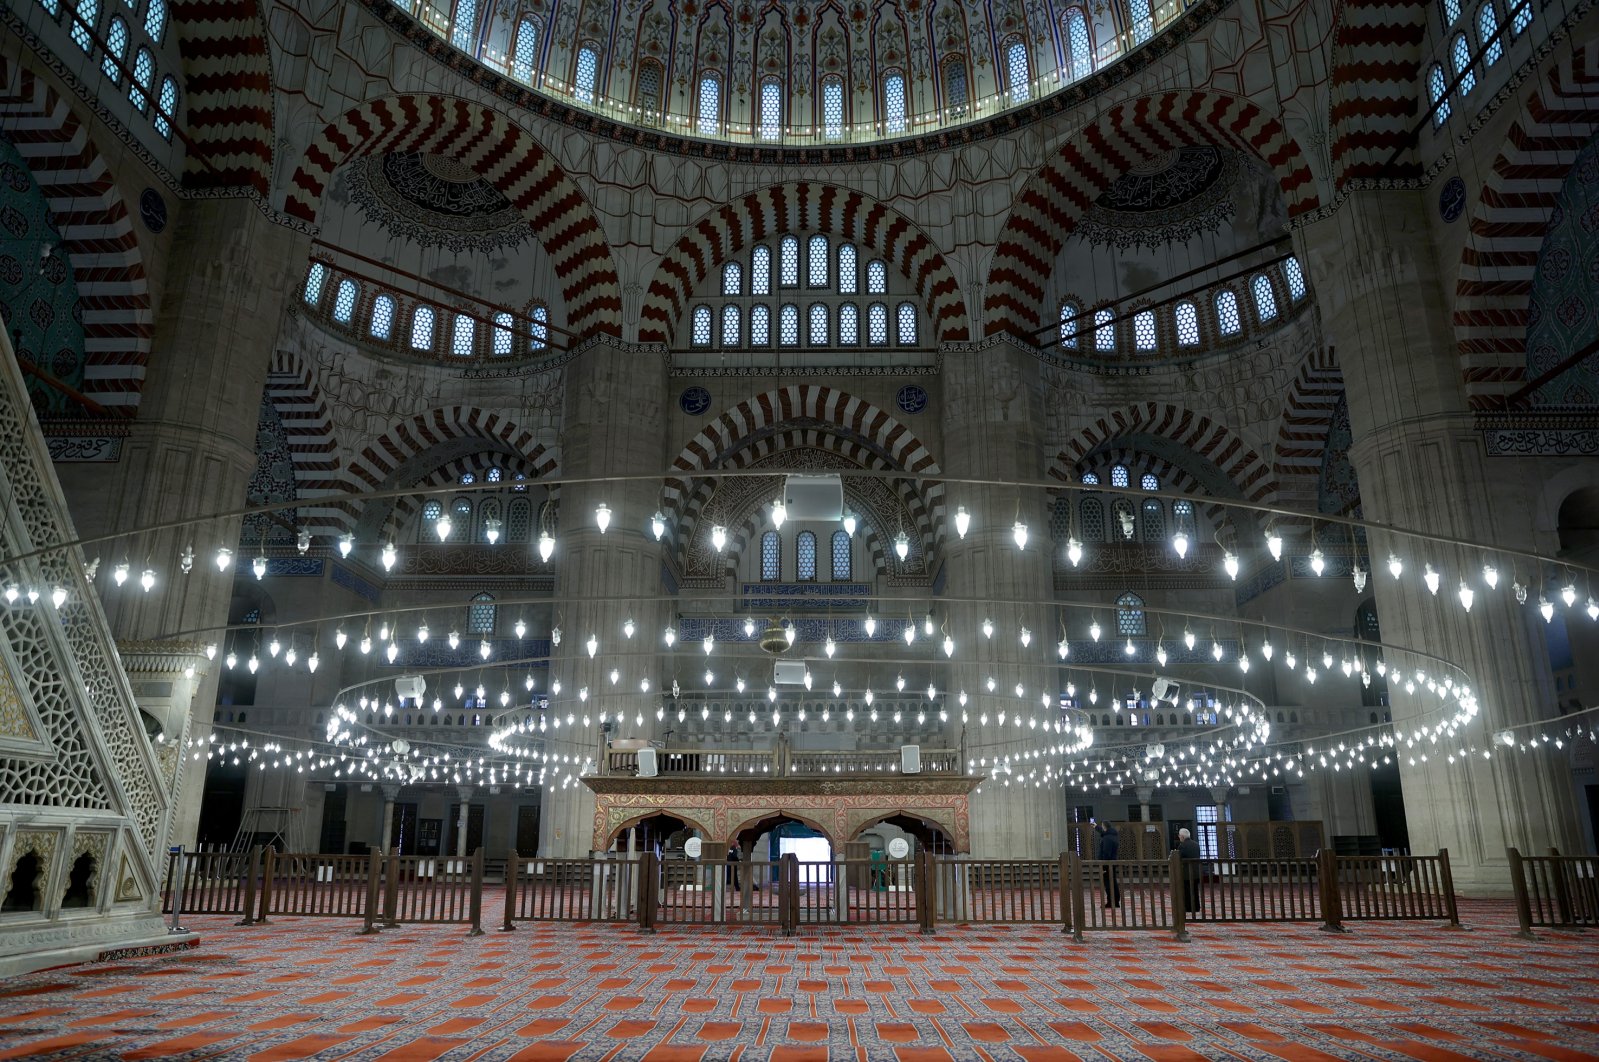 Restorasi di Masjid Selimiye yang terdaftar di UNESCO di Edirne dimulai